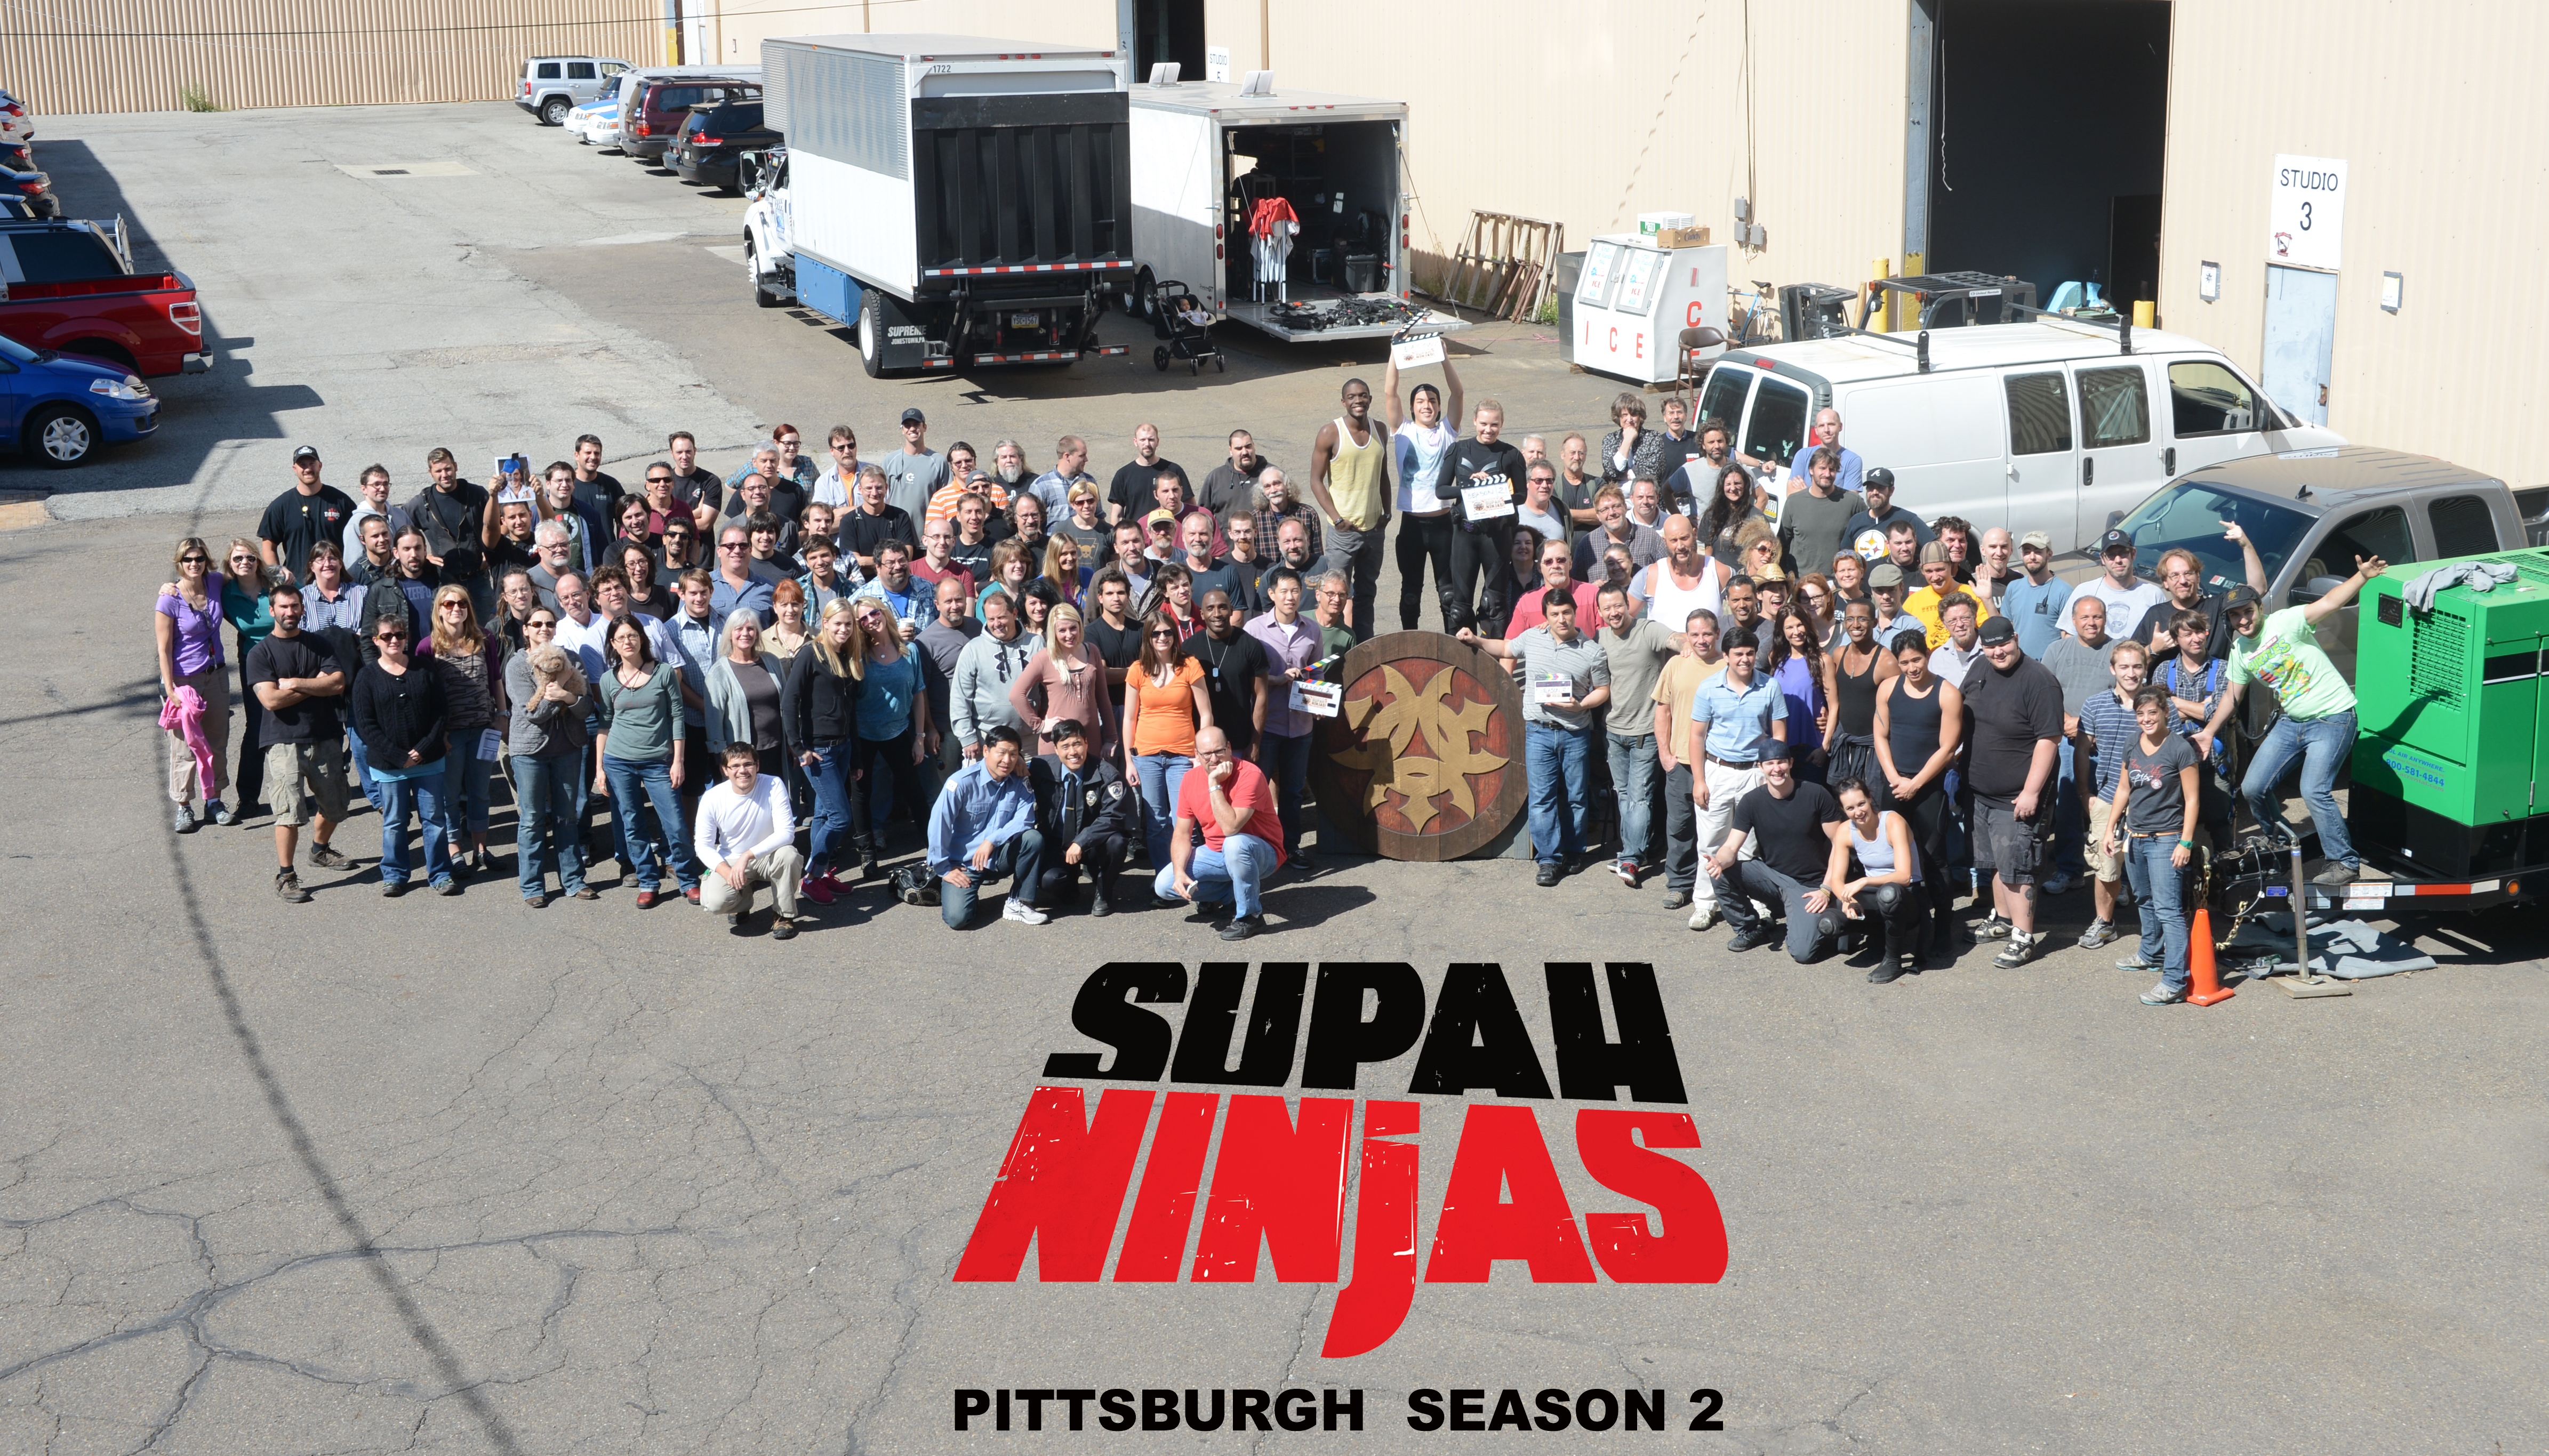 Pittsburgh Crew Supah Ninjas Saeson 2